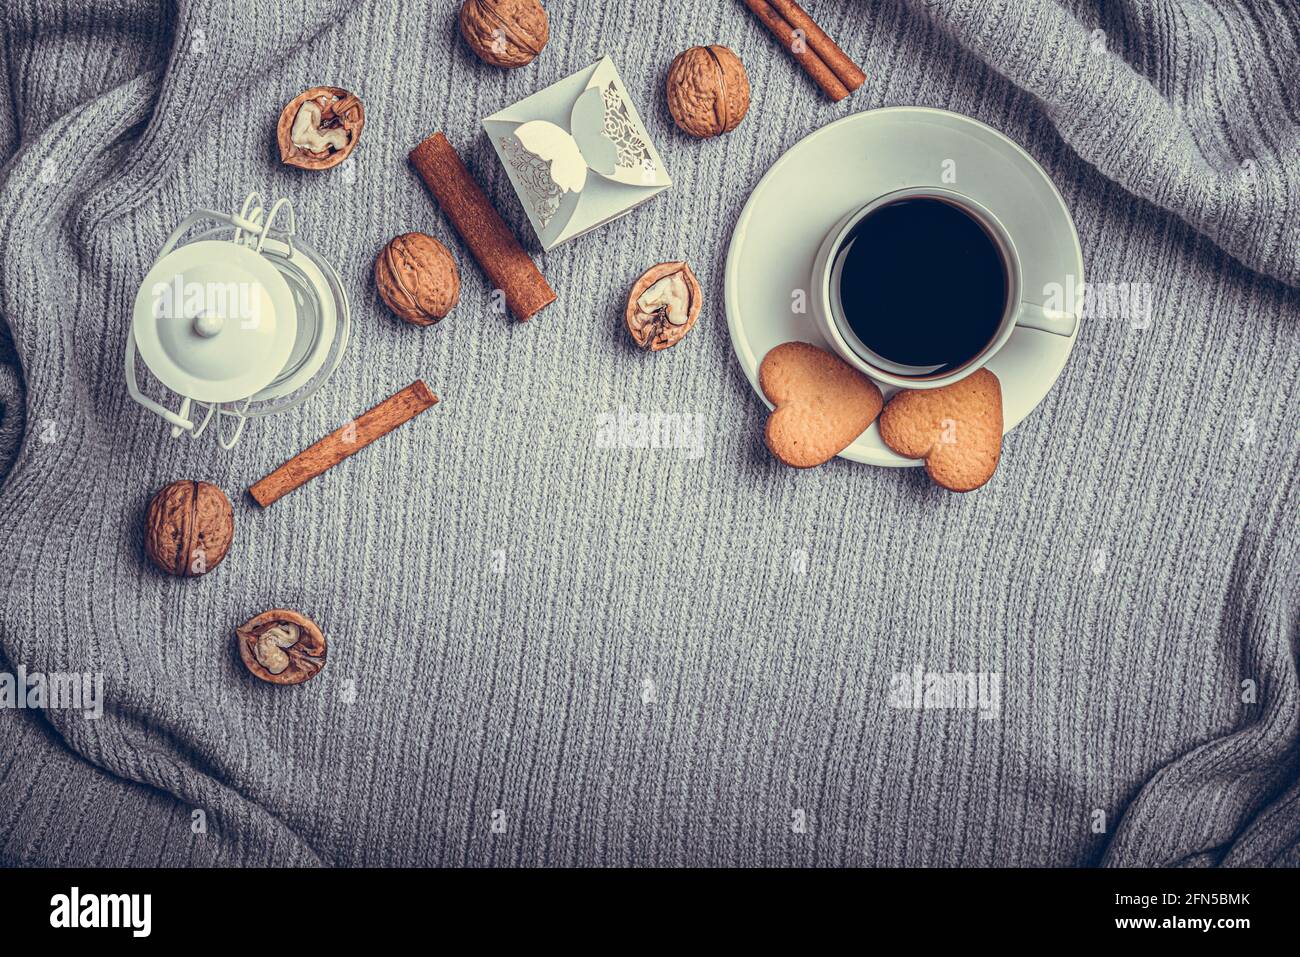 Una bella plaid, una tazza con caffè e biscotti su un tavolo con candele e una busta bianca. Foto Stock